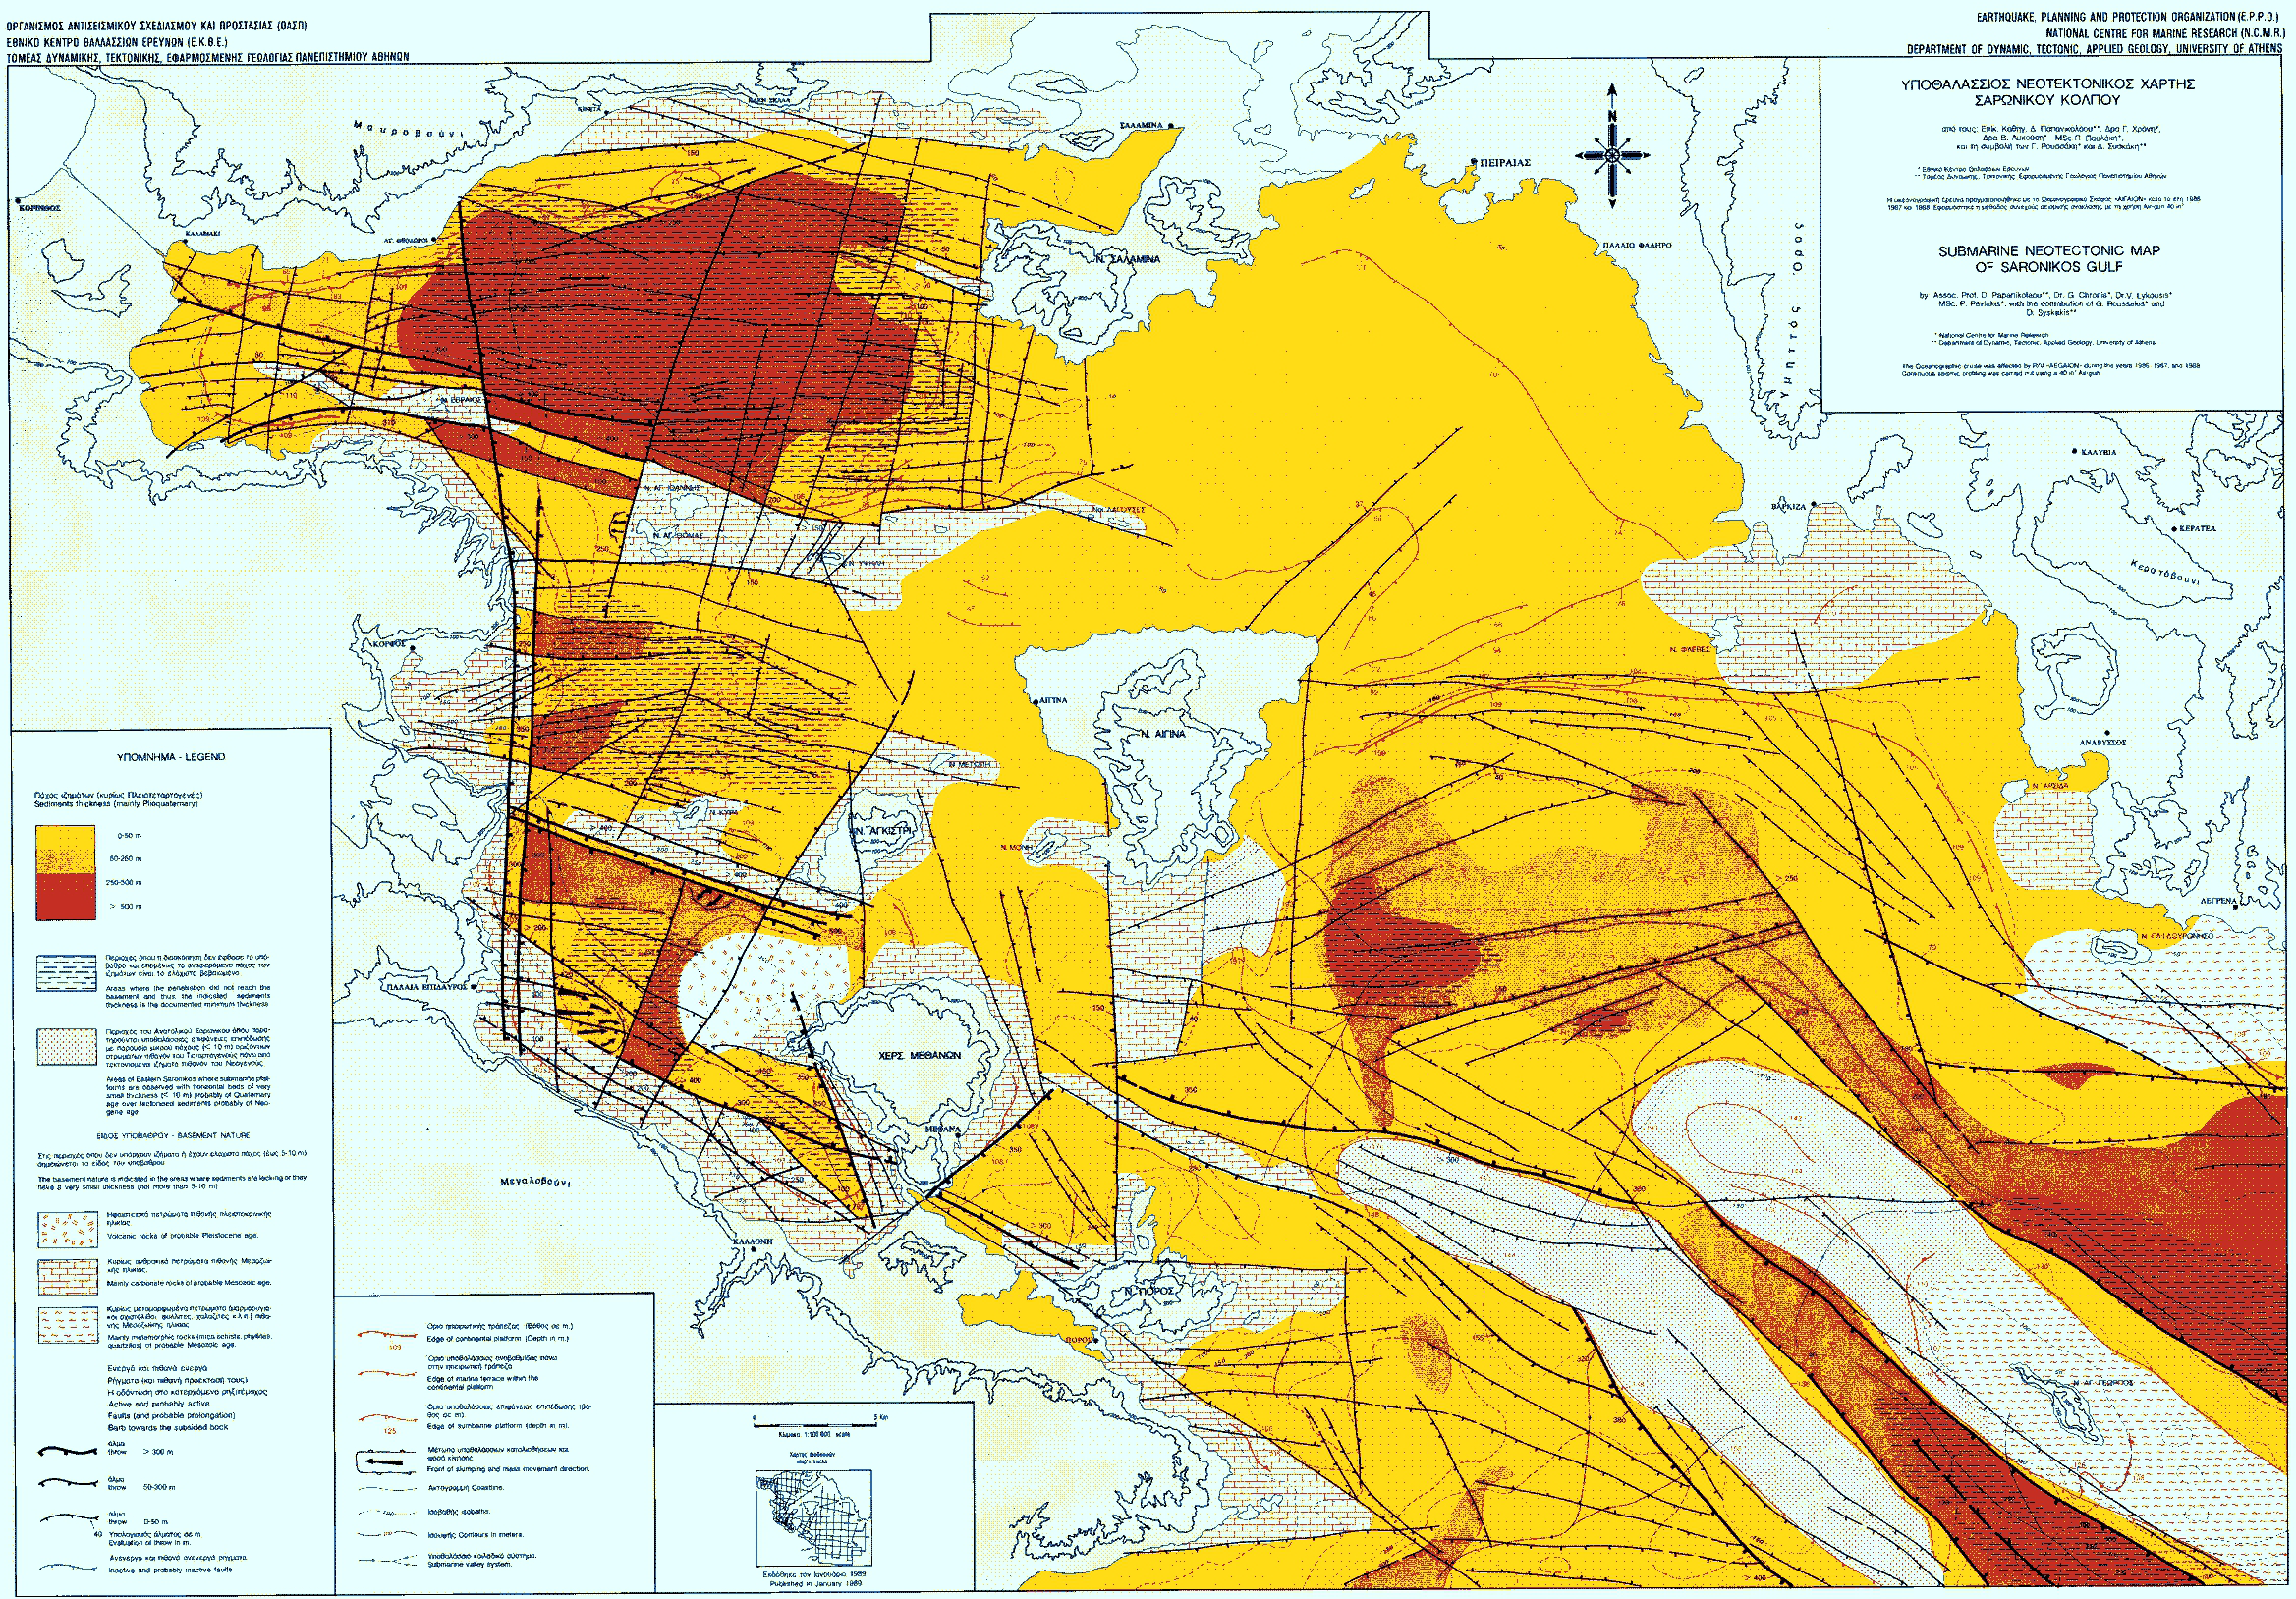 Εικόνα 1.11 Ο «Υποθαλάσσιος Νεοτεκτονικός Χάρτης του Σαρωνικού Κόλπου σε κλίμακα 1:100.000» (Παπανικολάου κ.α., 1989), που έχει συνταχθεί με τα δεδομένα από το ωκεανογραφικό σκάφος «ΑΙΓΑΙΟ».